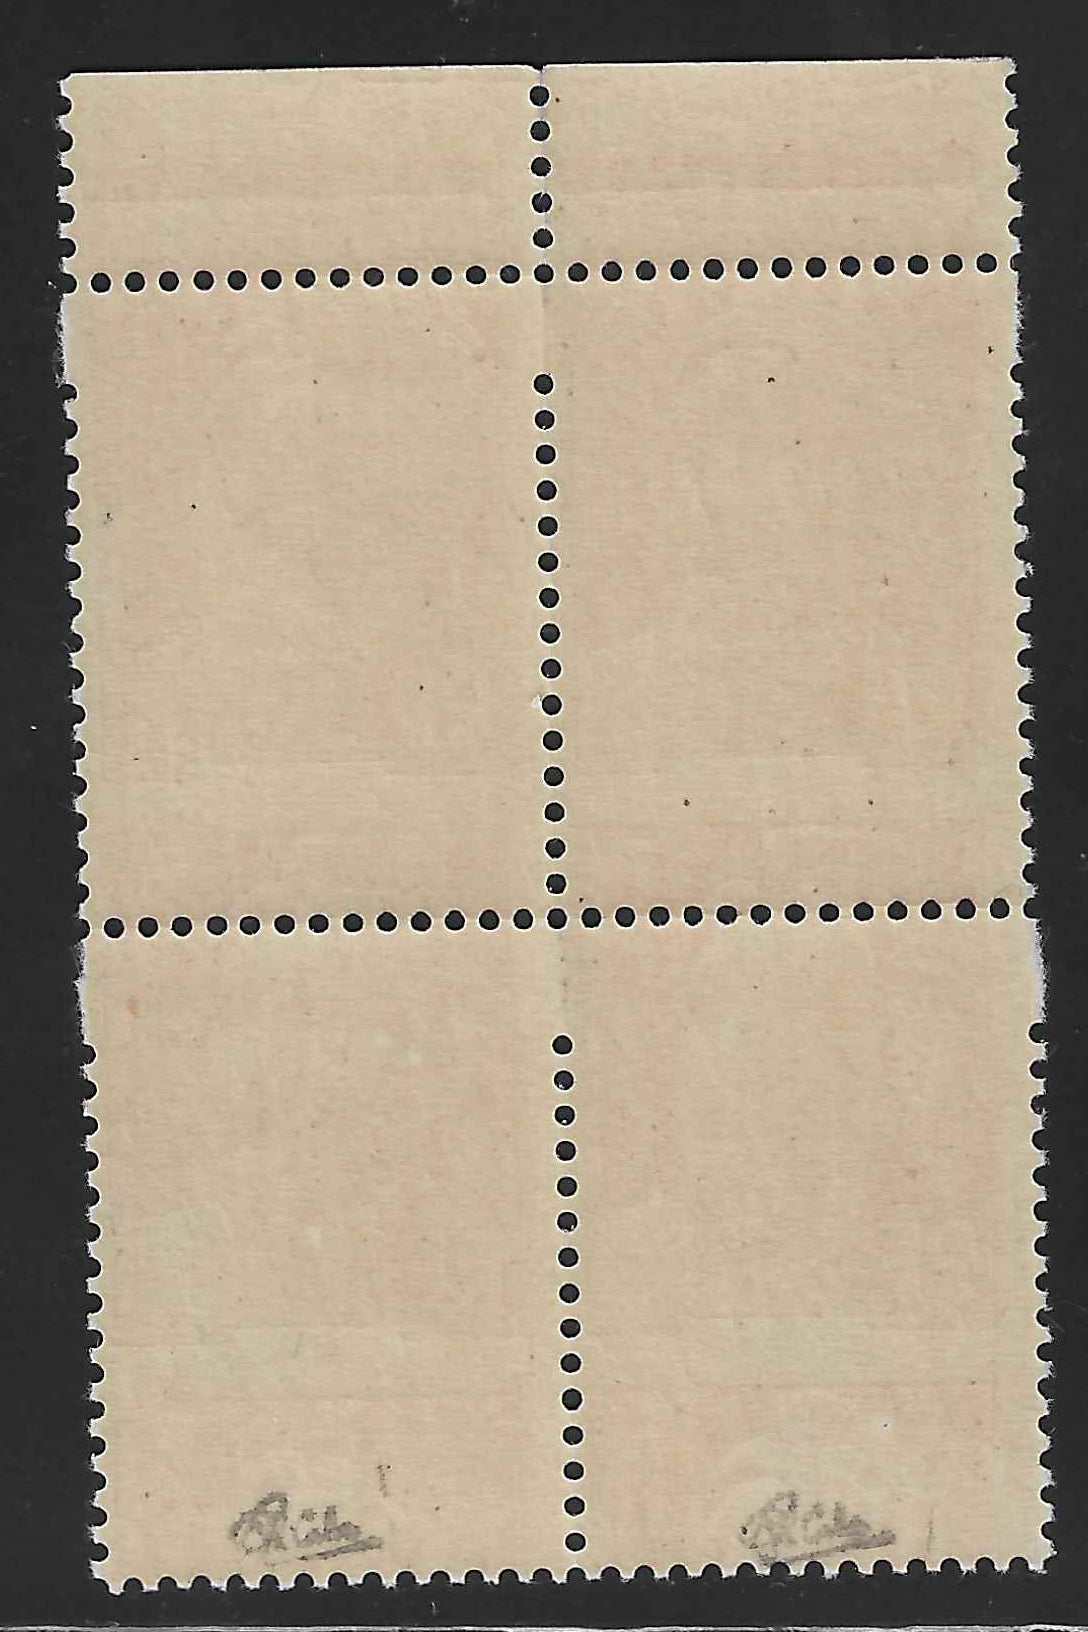 N°YT 716 - Marianne de Gandon - variété timbres plus grands et piquage à cheval - neufs** - SUP - signés Calves